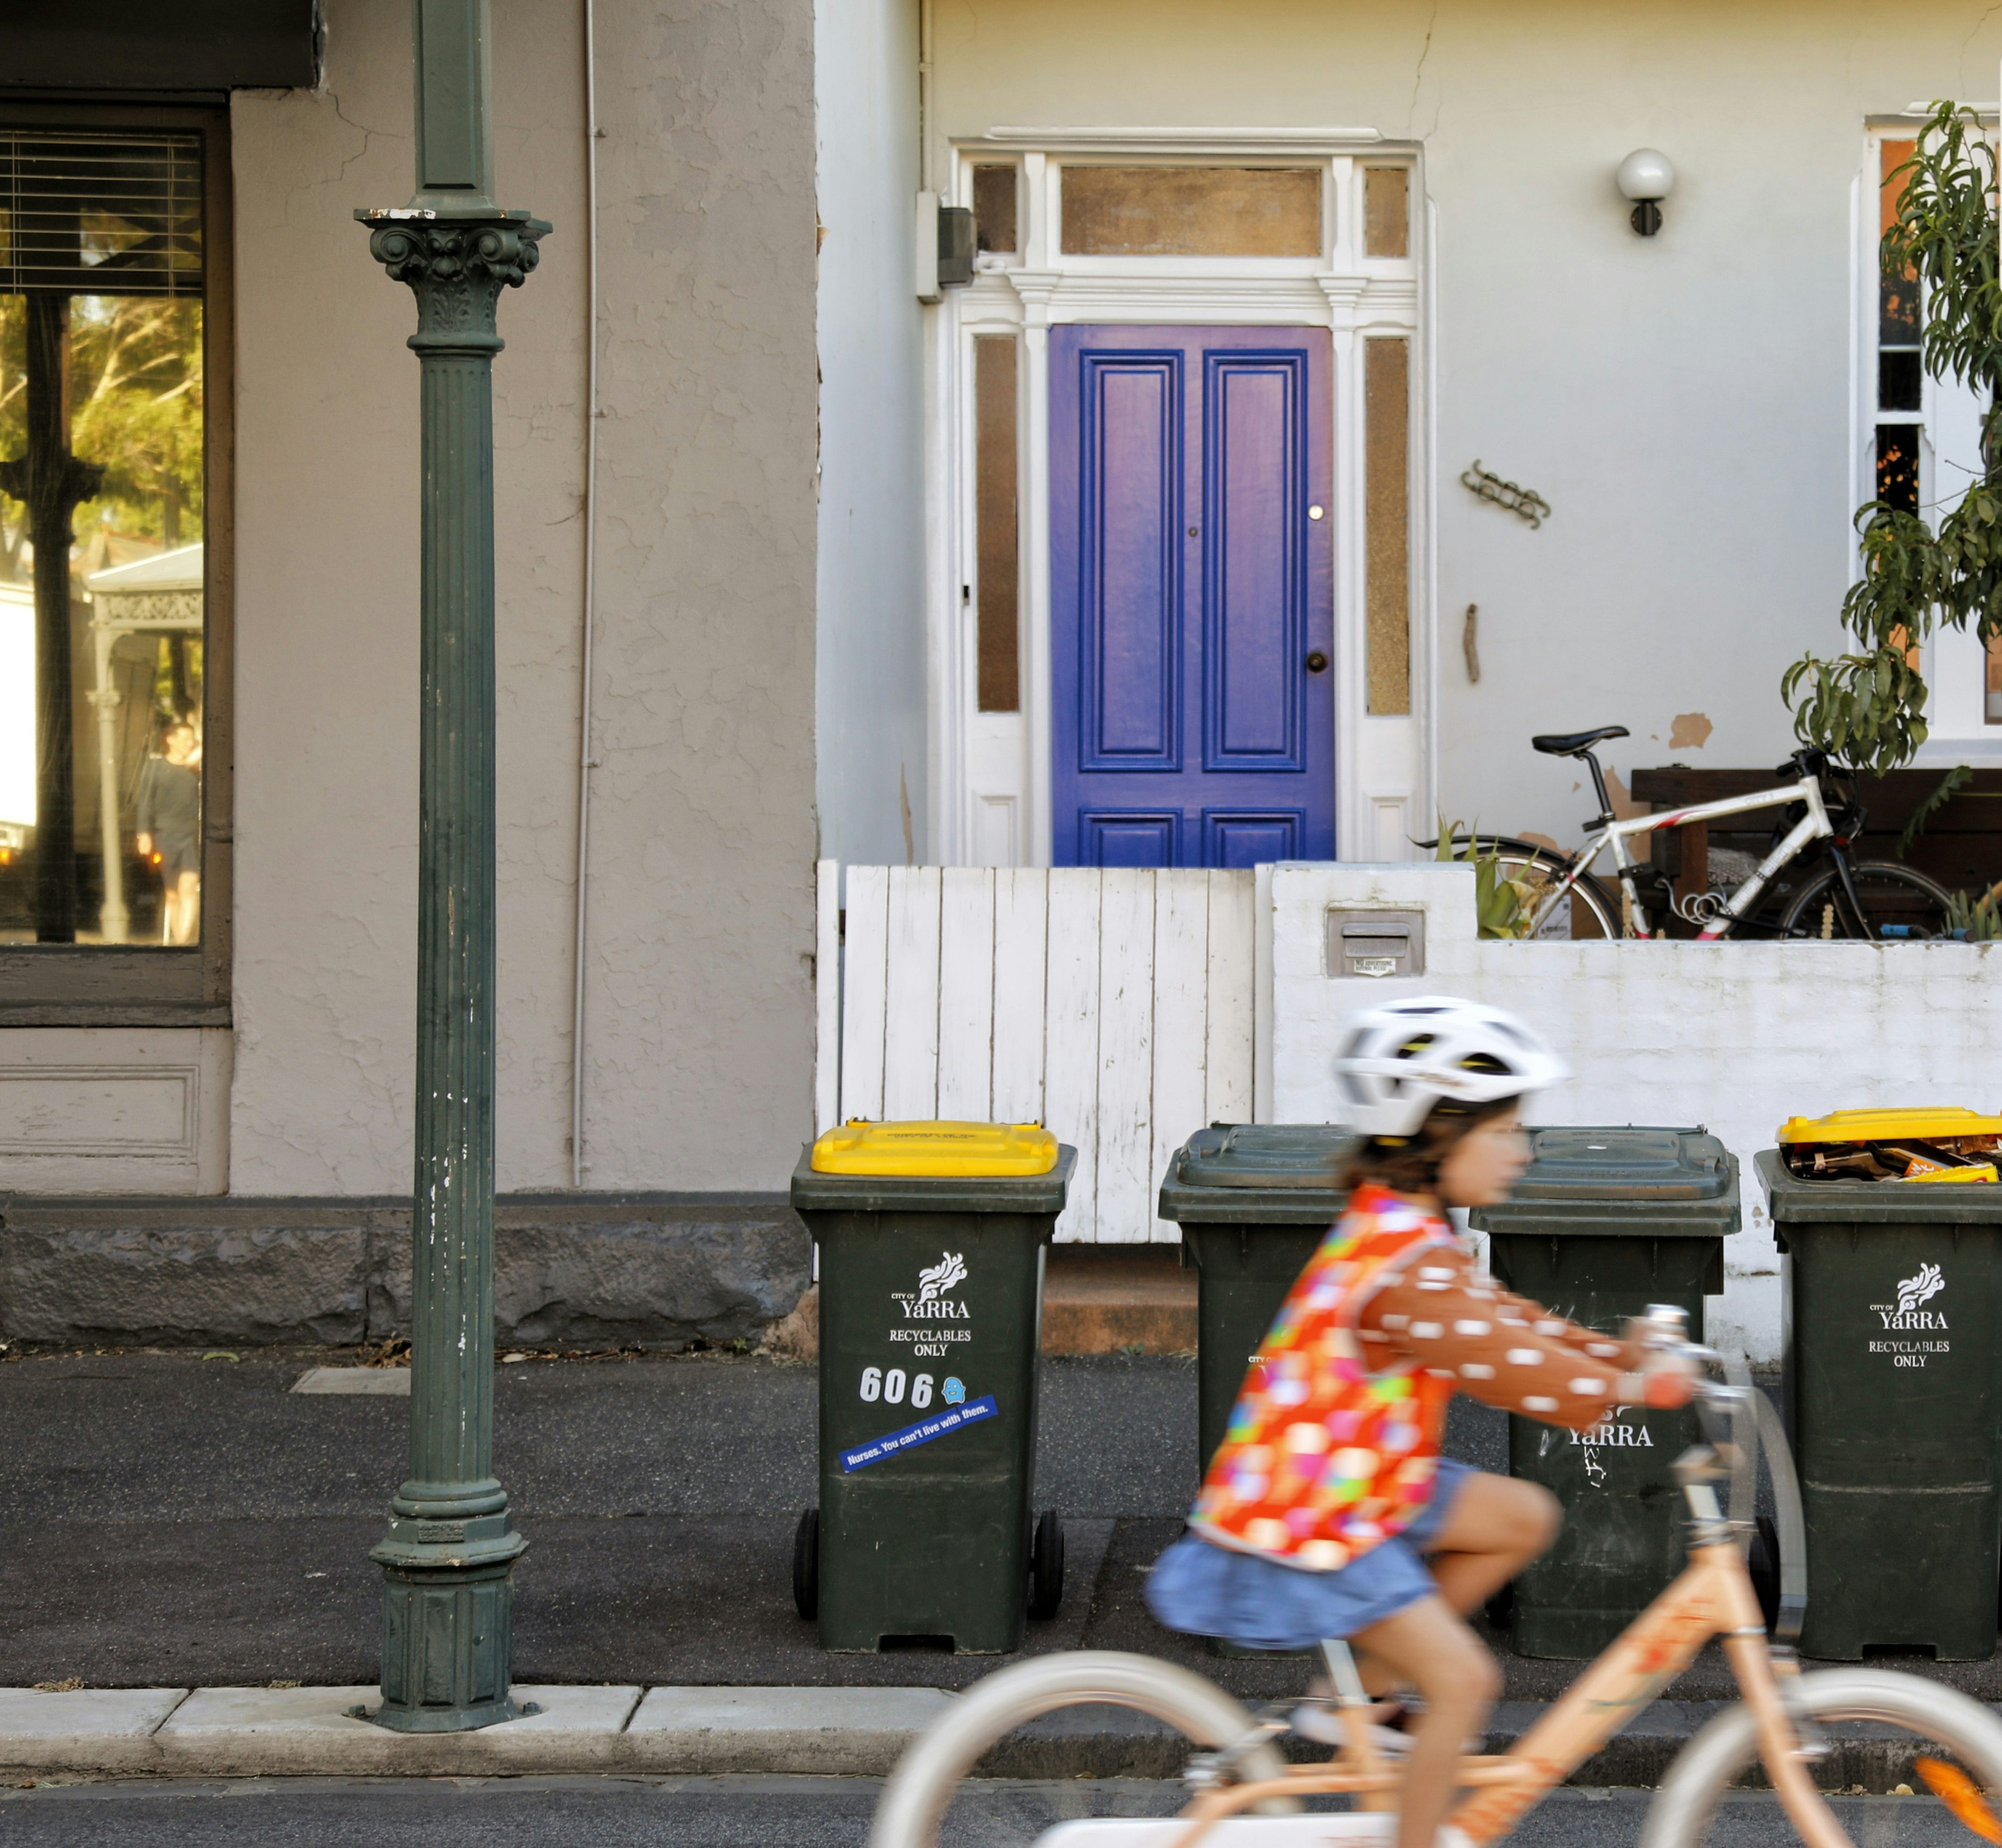 Young girl riding bike past kerbside bins